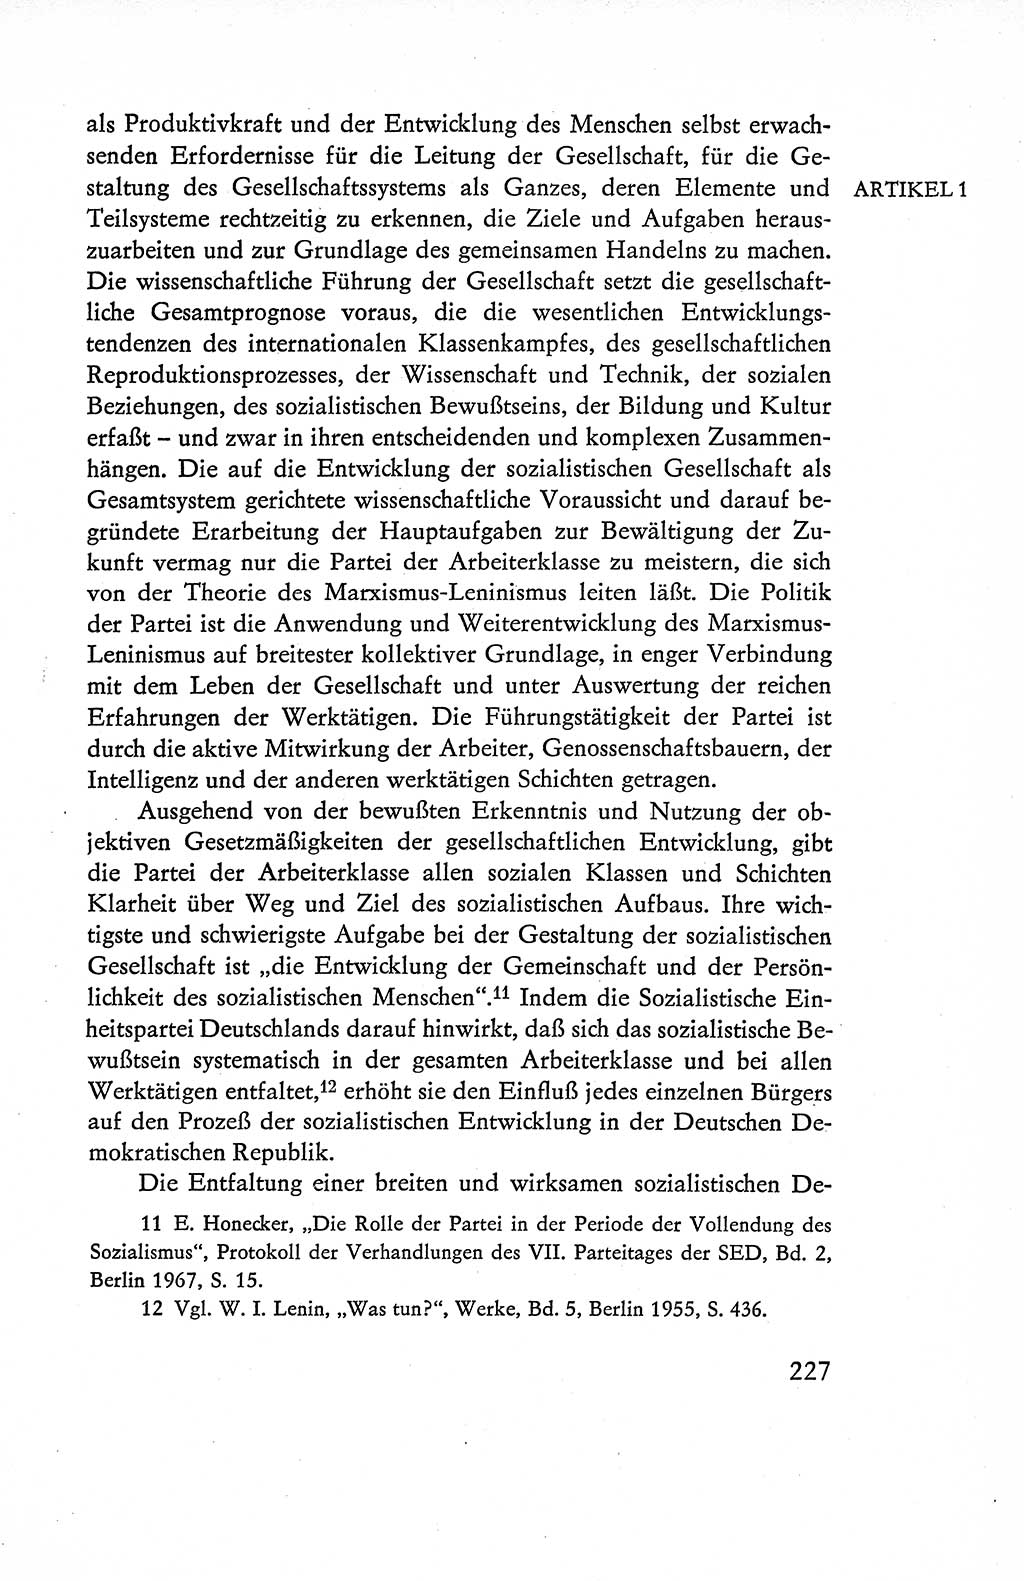 Verfassung der Deutschen Demokratischen Republik (DDR), Dokumente, Kommentar 1969, Band 1, Seite 227 (Verf. DDR Dok. Komm. 1969, Bd. 1, S. 227)